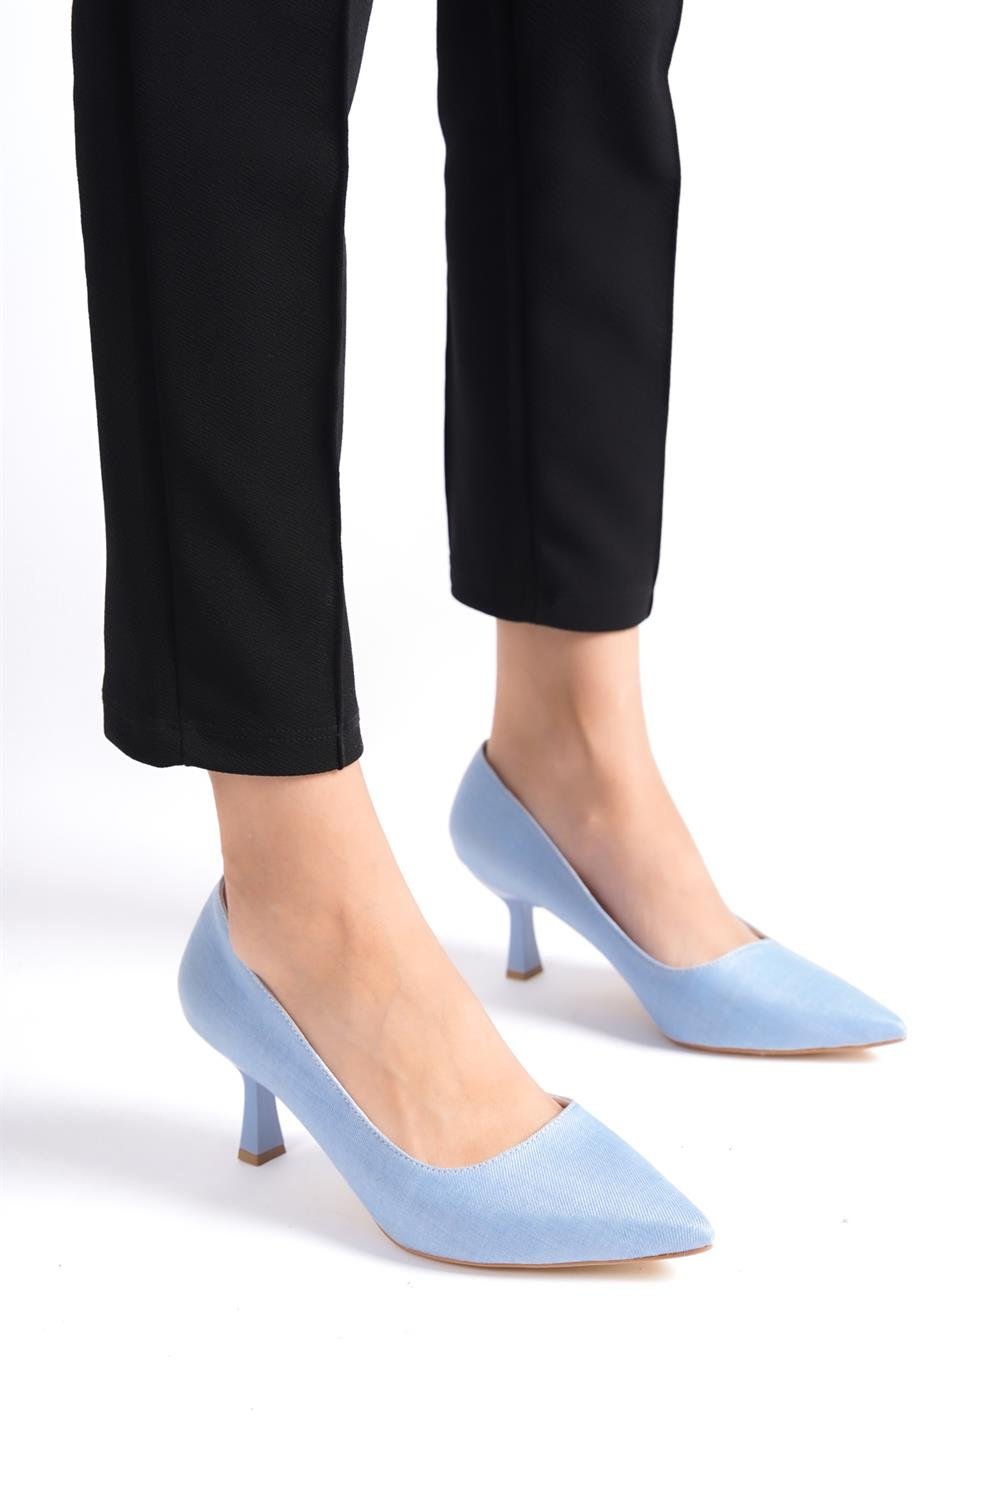 Kadın Açık Mavi Topuklu Ayakkabı ST150